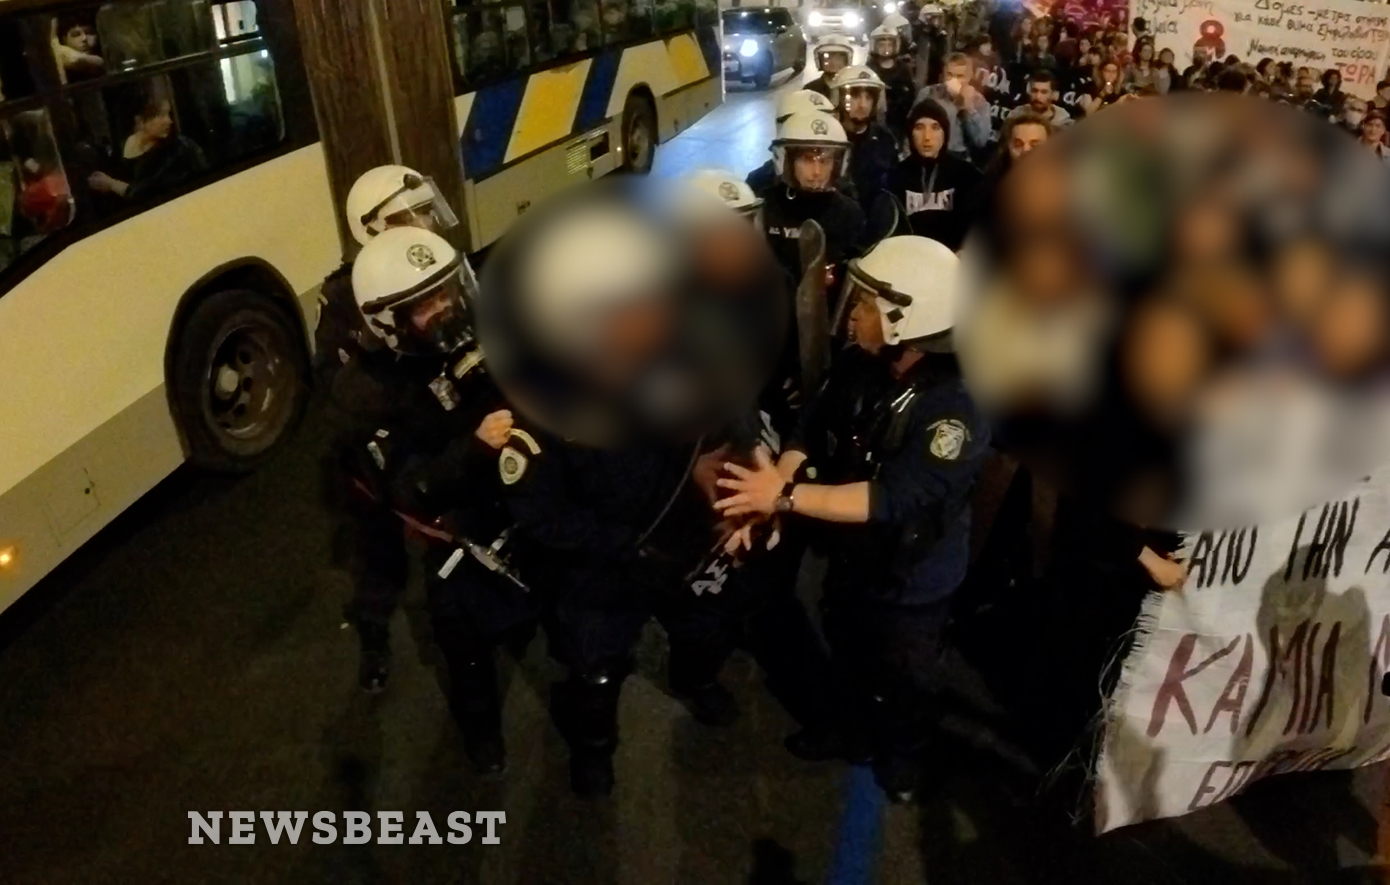 Αστυνομικός προκαλεί και βρίζει διαδηλωτή στη συγκέντρωση διαμαρτυρίας για τις γυναικοκτονίες – «Έλα εδώ ρε μ…α»